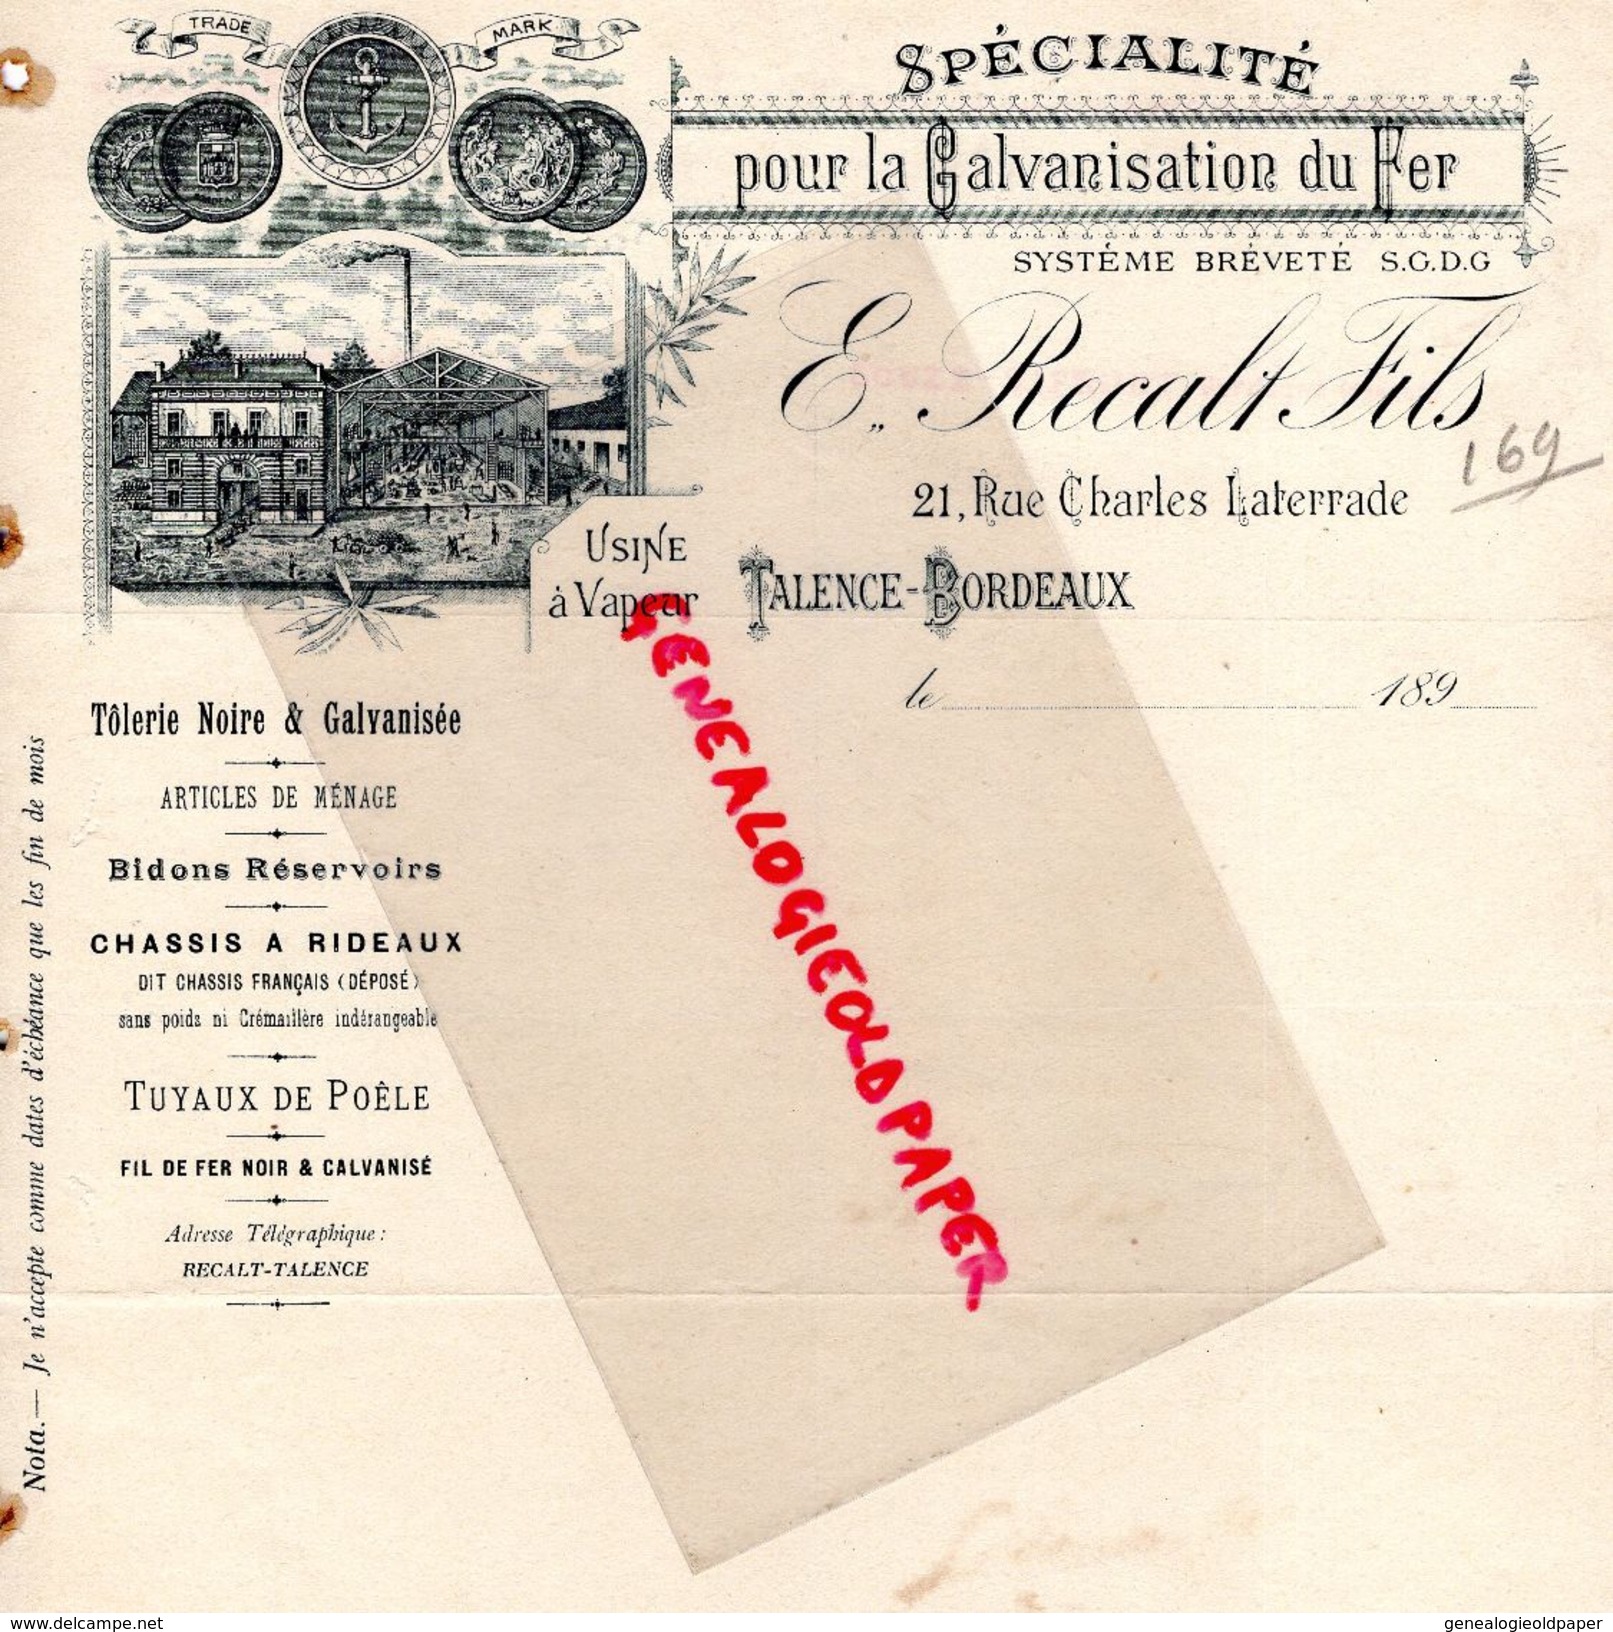 33- TALENCE BORDEAUX- FACTURE E. RECALT FILS- SPECIALITE POUR GALVANISATION DU FER-TOLERIE NOIRE -TUYAUX POELE-1890 - 1800 – 1899